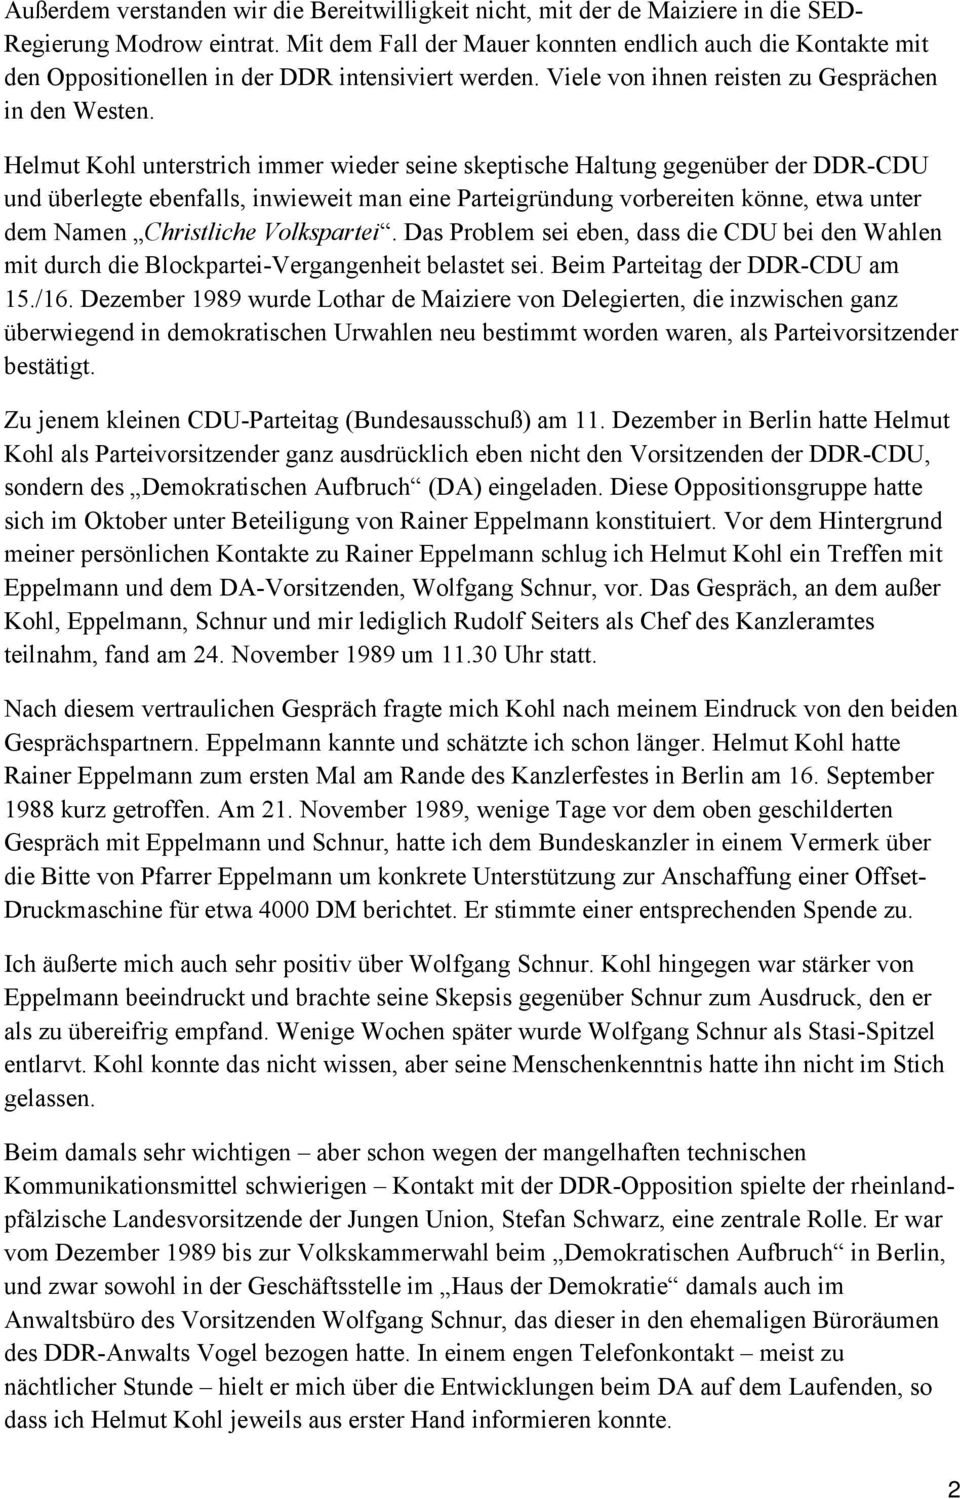 Helmut Kohl unterstrich immer wieder seine skeptische Haltung gegenüber der DDR-CDU und überlegte ebenfalls, inwieweit man eine Parteigründung vorbereiten könne, etwa unter dem Namen Christliche